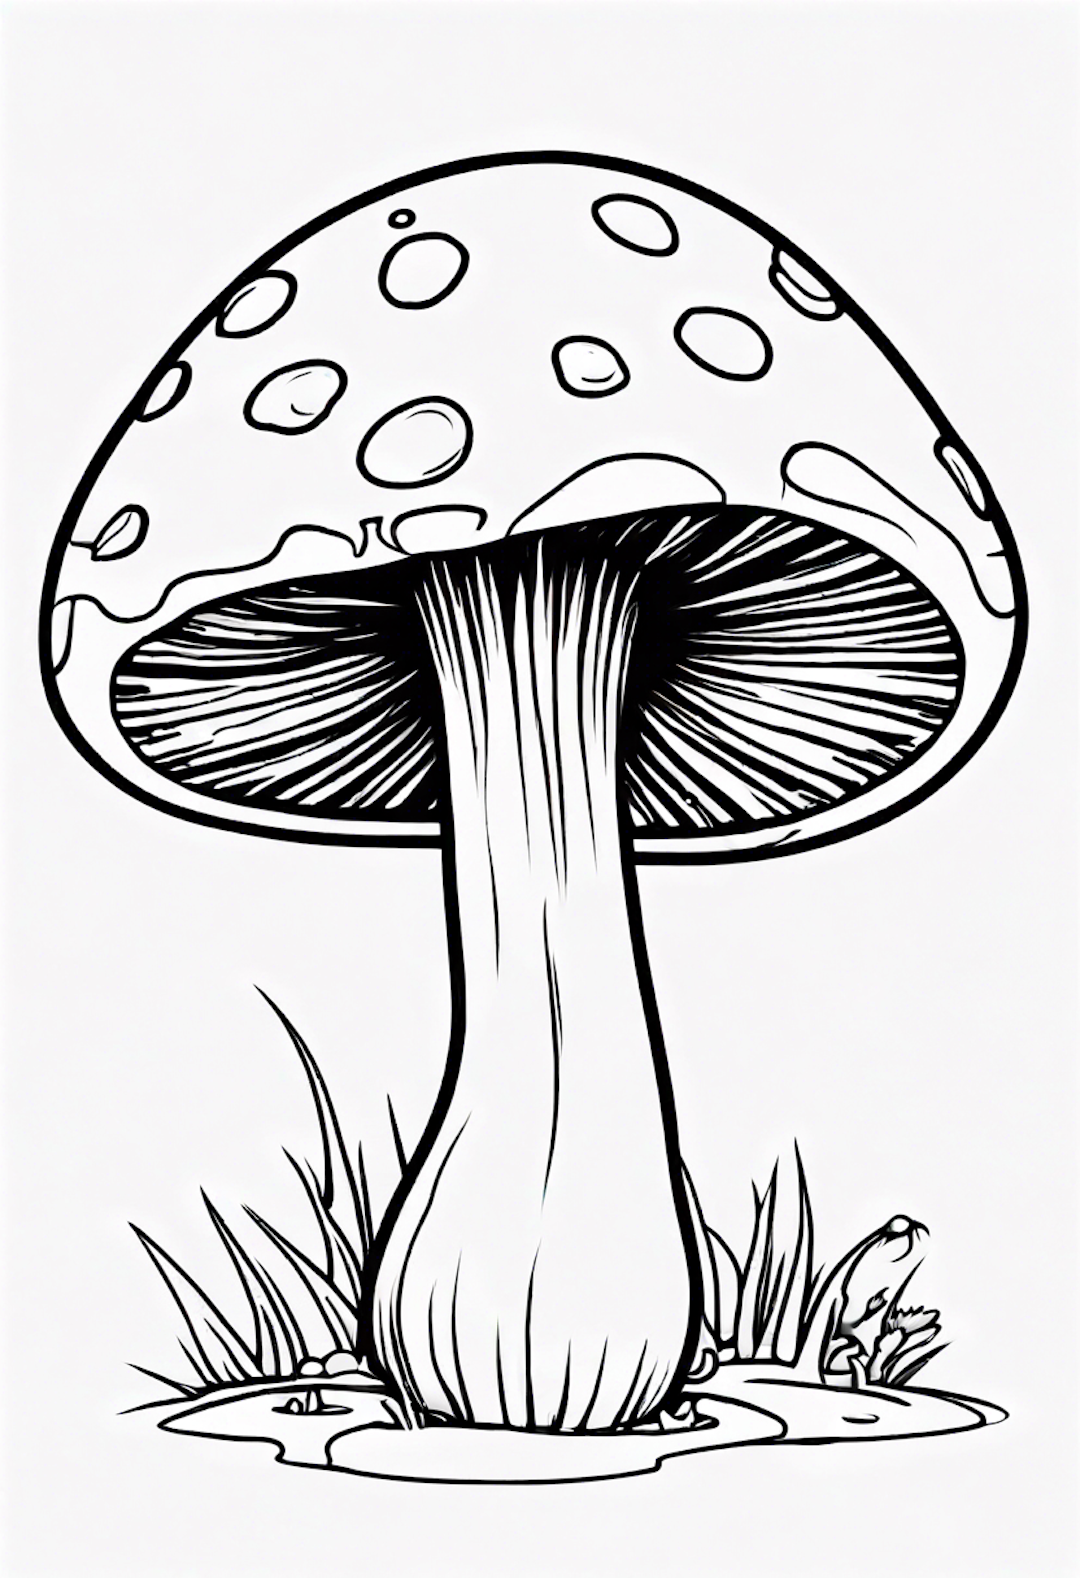 A Cartoon Mushroom Dancing